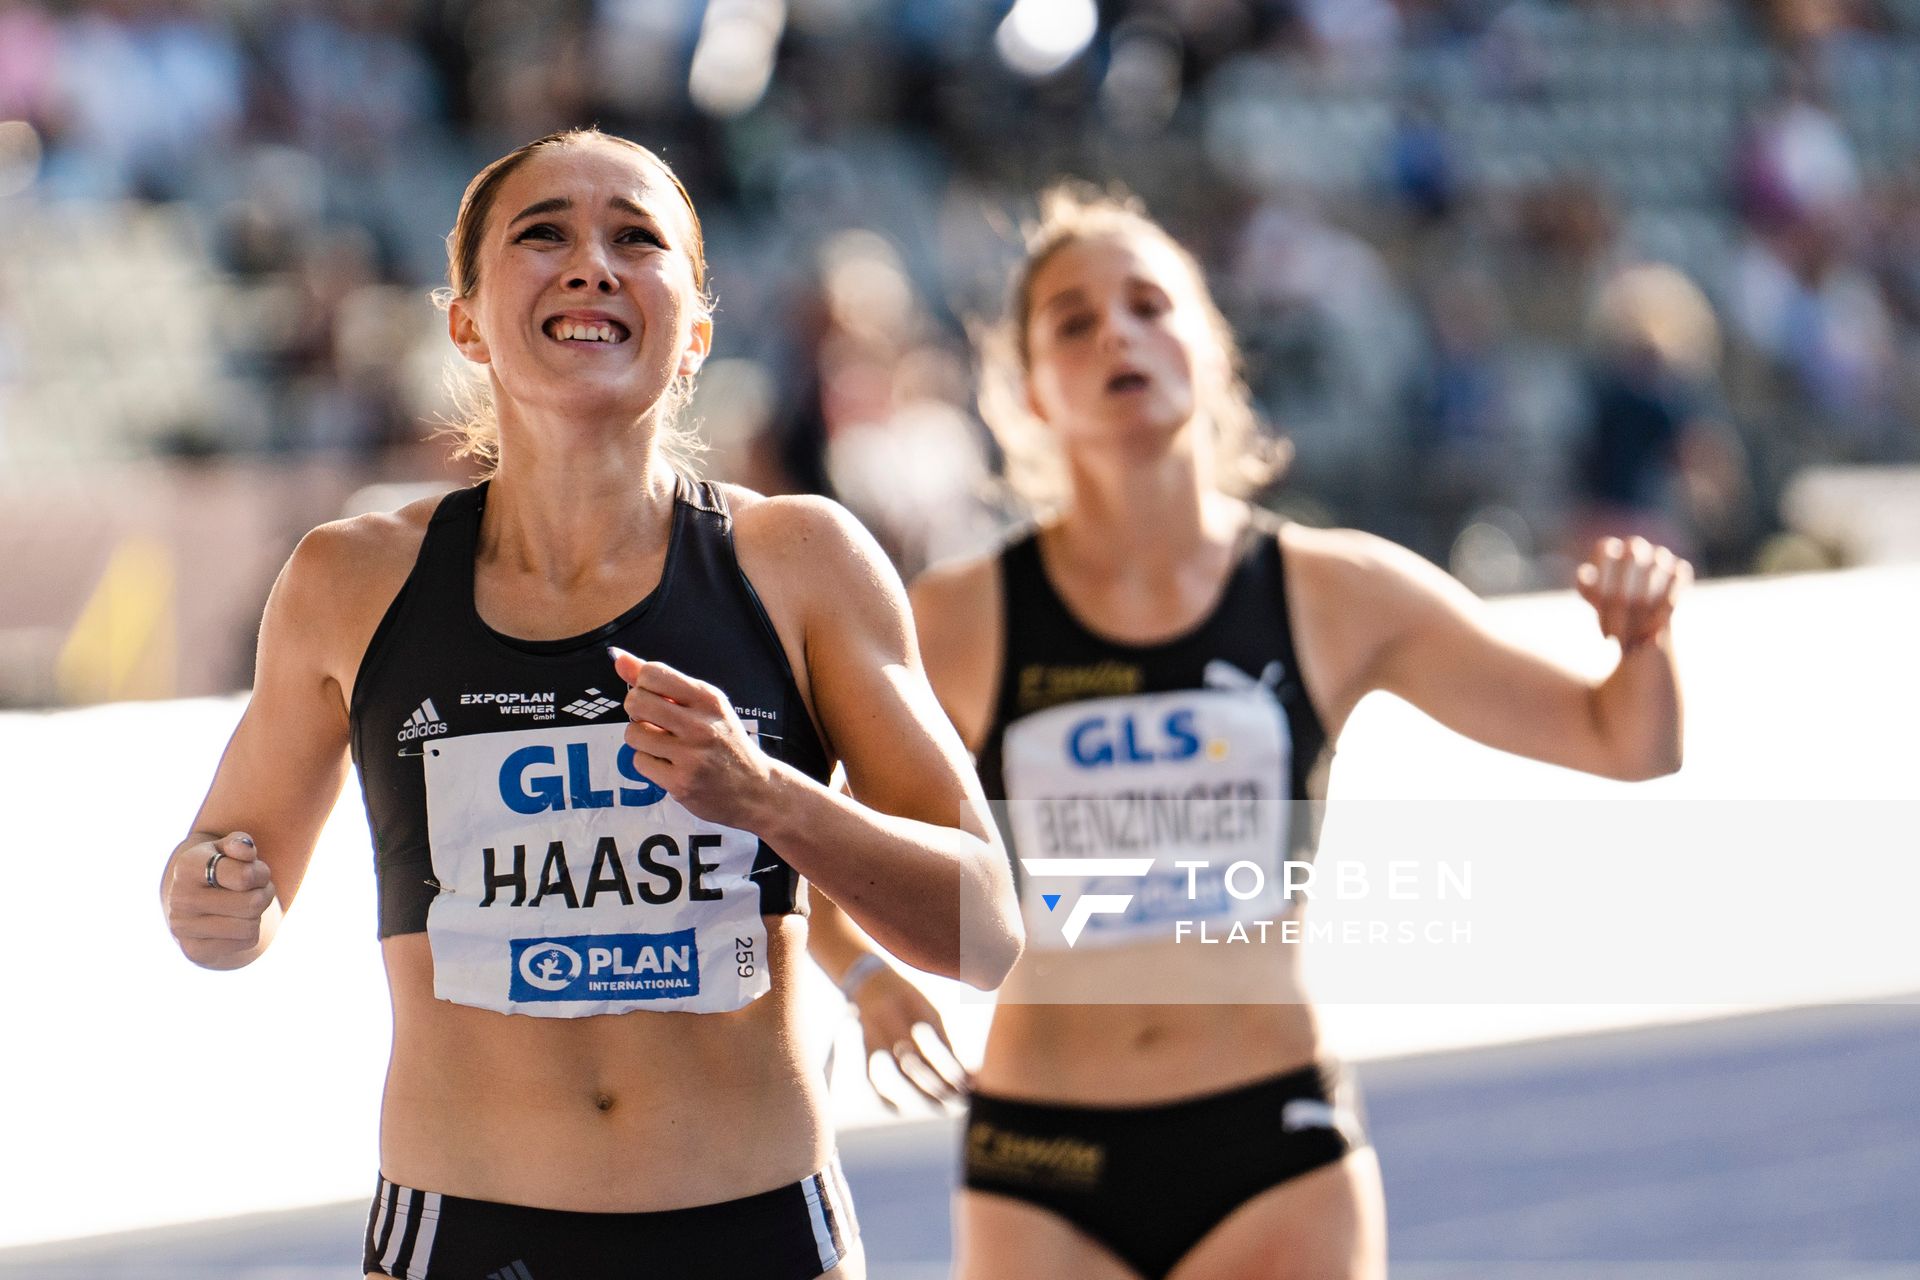 Rebekka Haase (Sprintteam Wetzlar) gewinnt die 200m waehrend der deutschen Leichtathletik-Meisterschaften im Olympiastadion am 26.06.2022 in Berlin